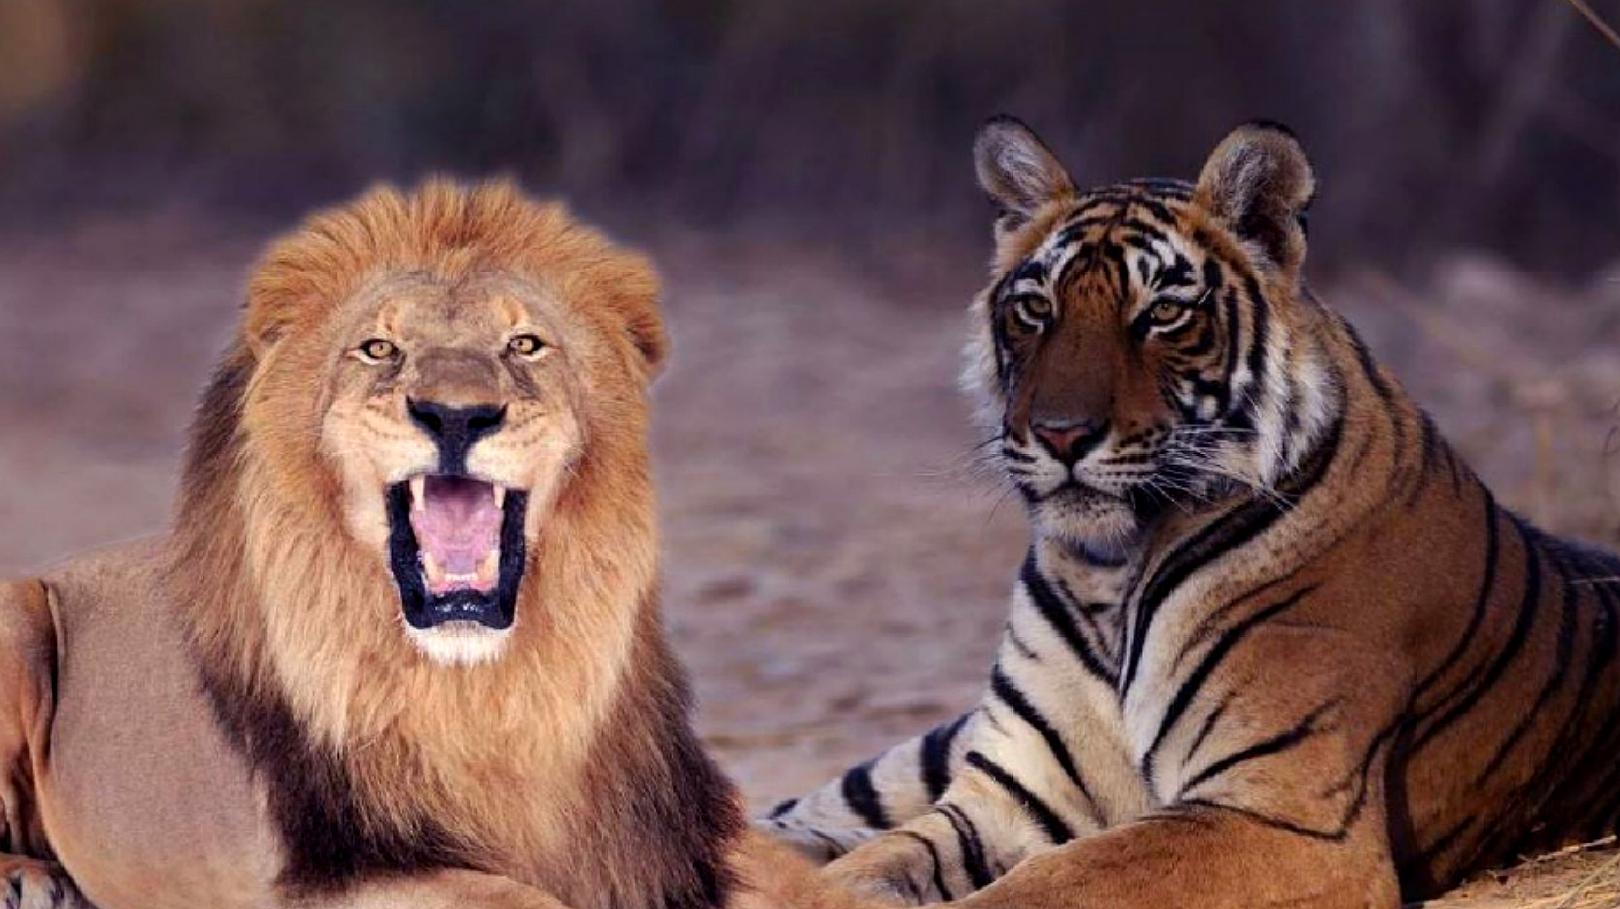 老虎vs狮子哪家强 今天终于见到一场最无悬念的决斗 爱言情